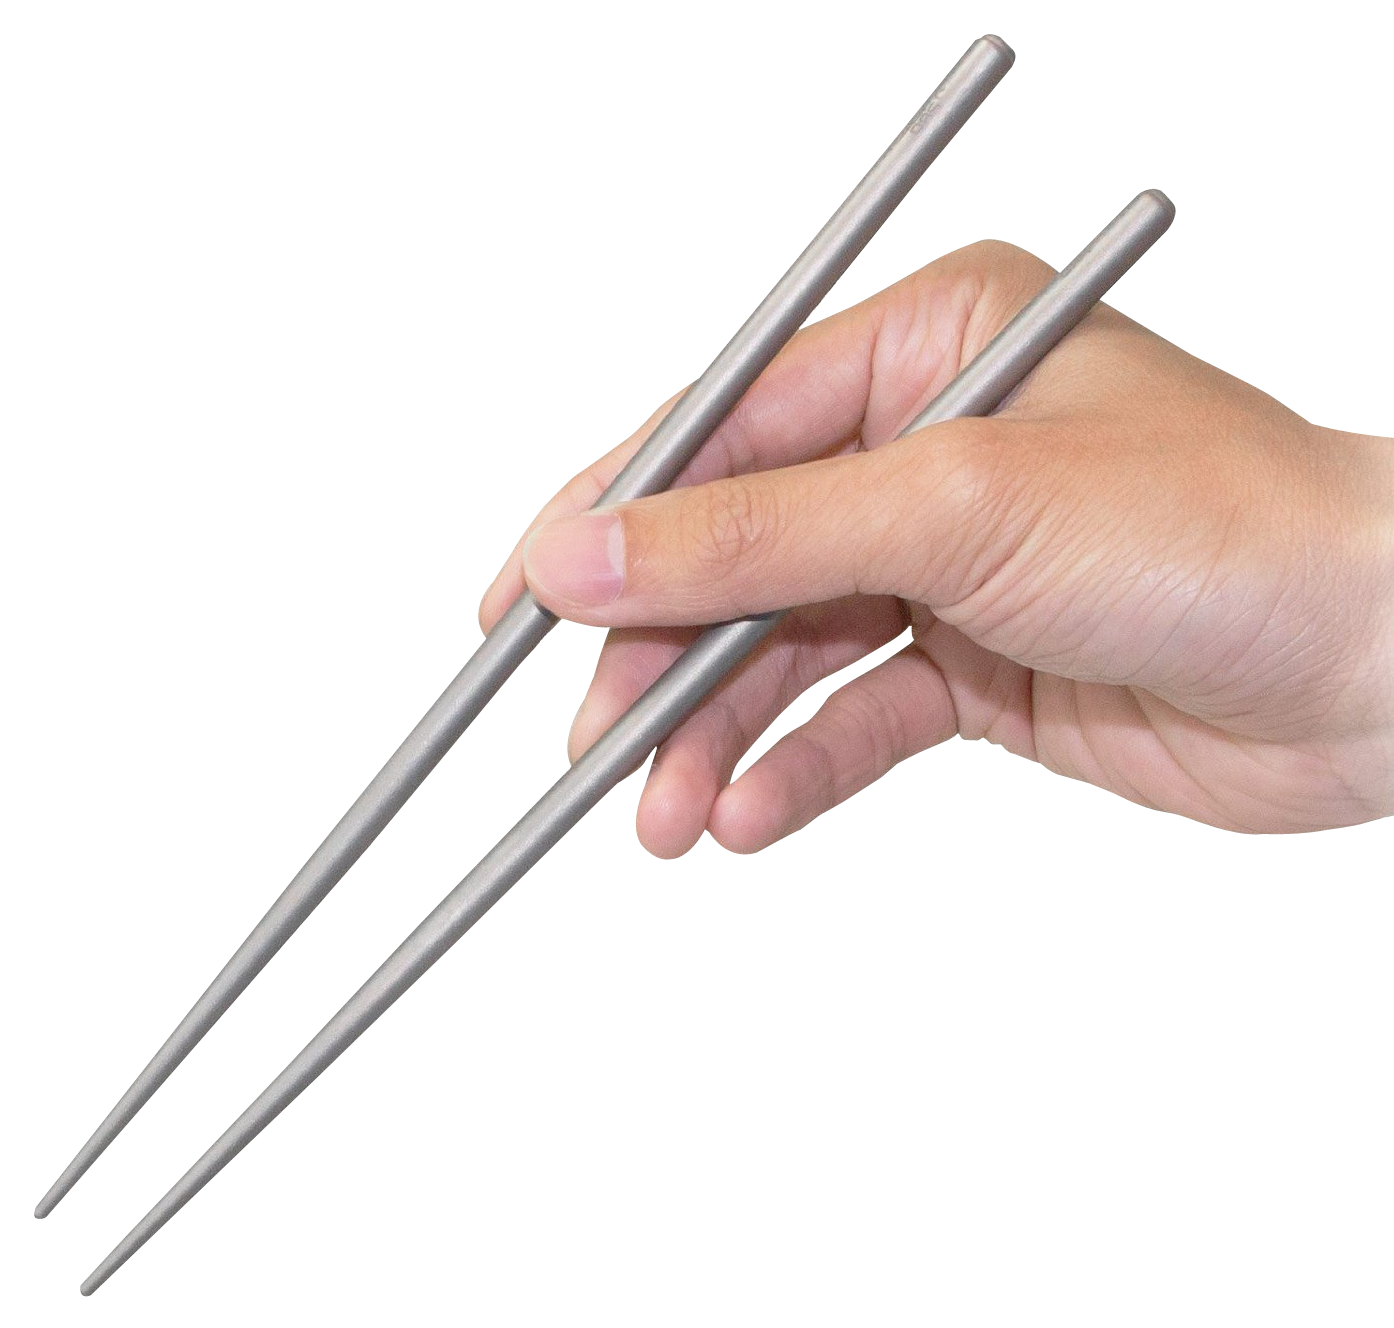 Hand holding Chopsticks